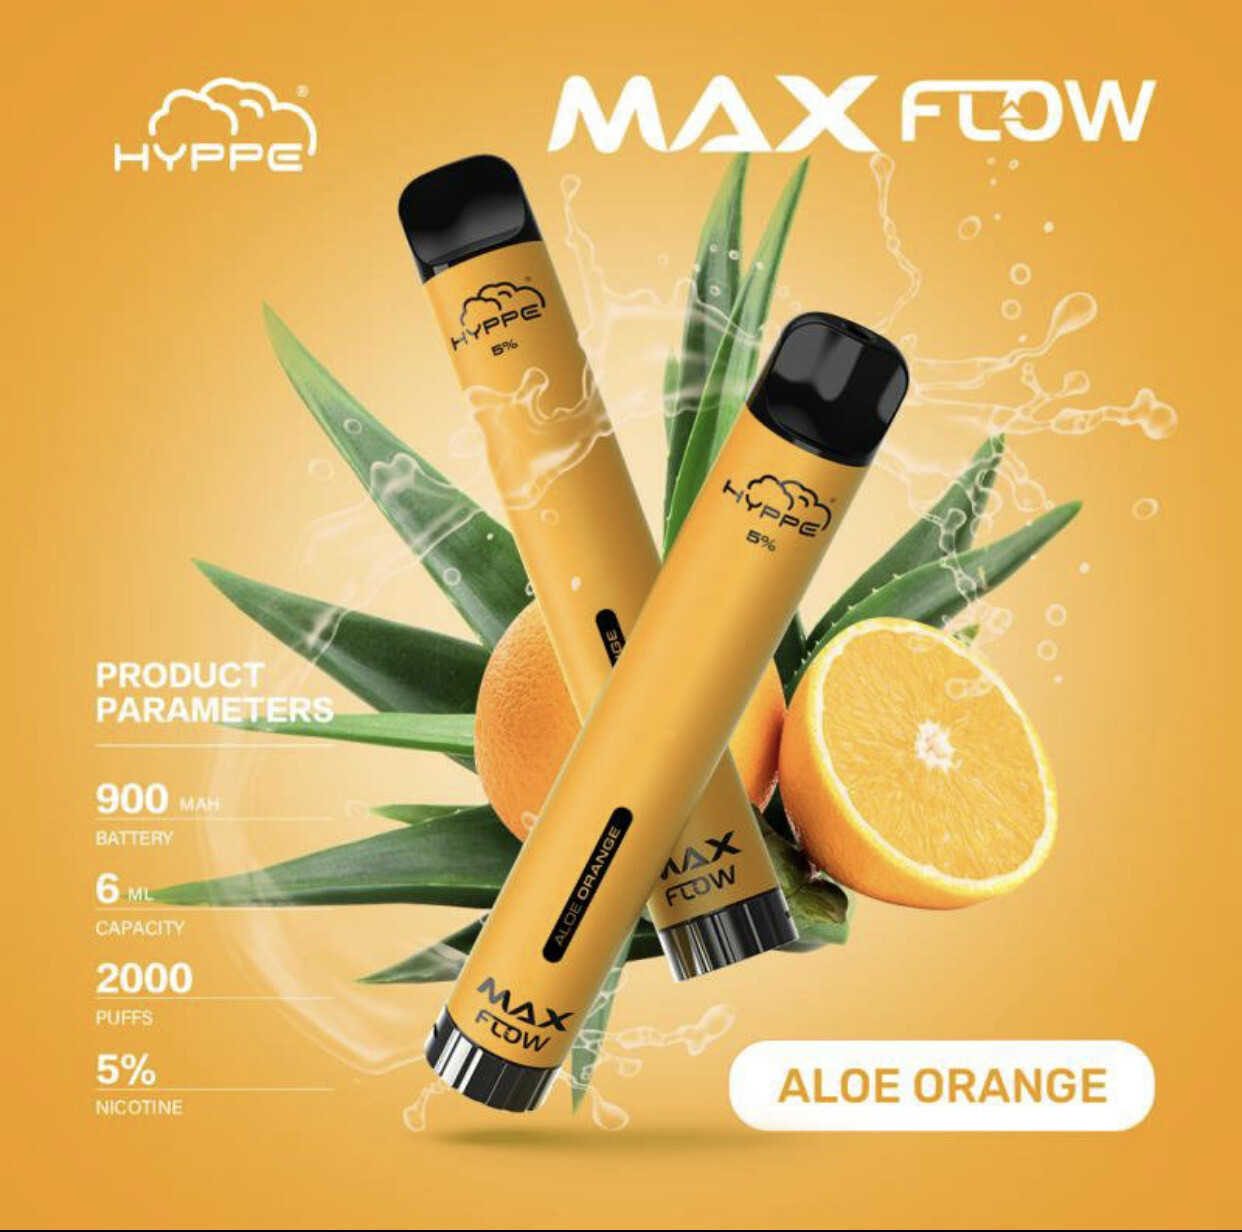 Hyppe Max Flow 5% Aloe Orange